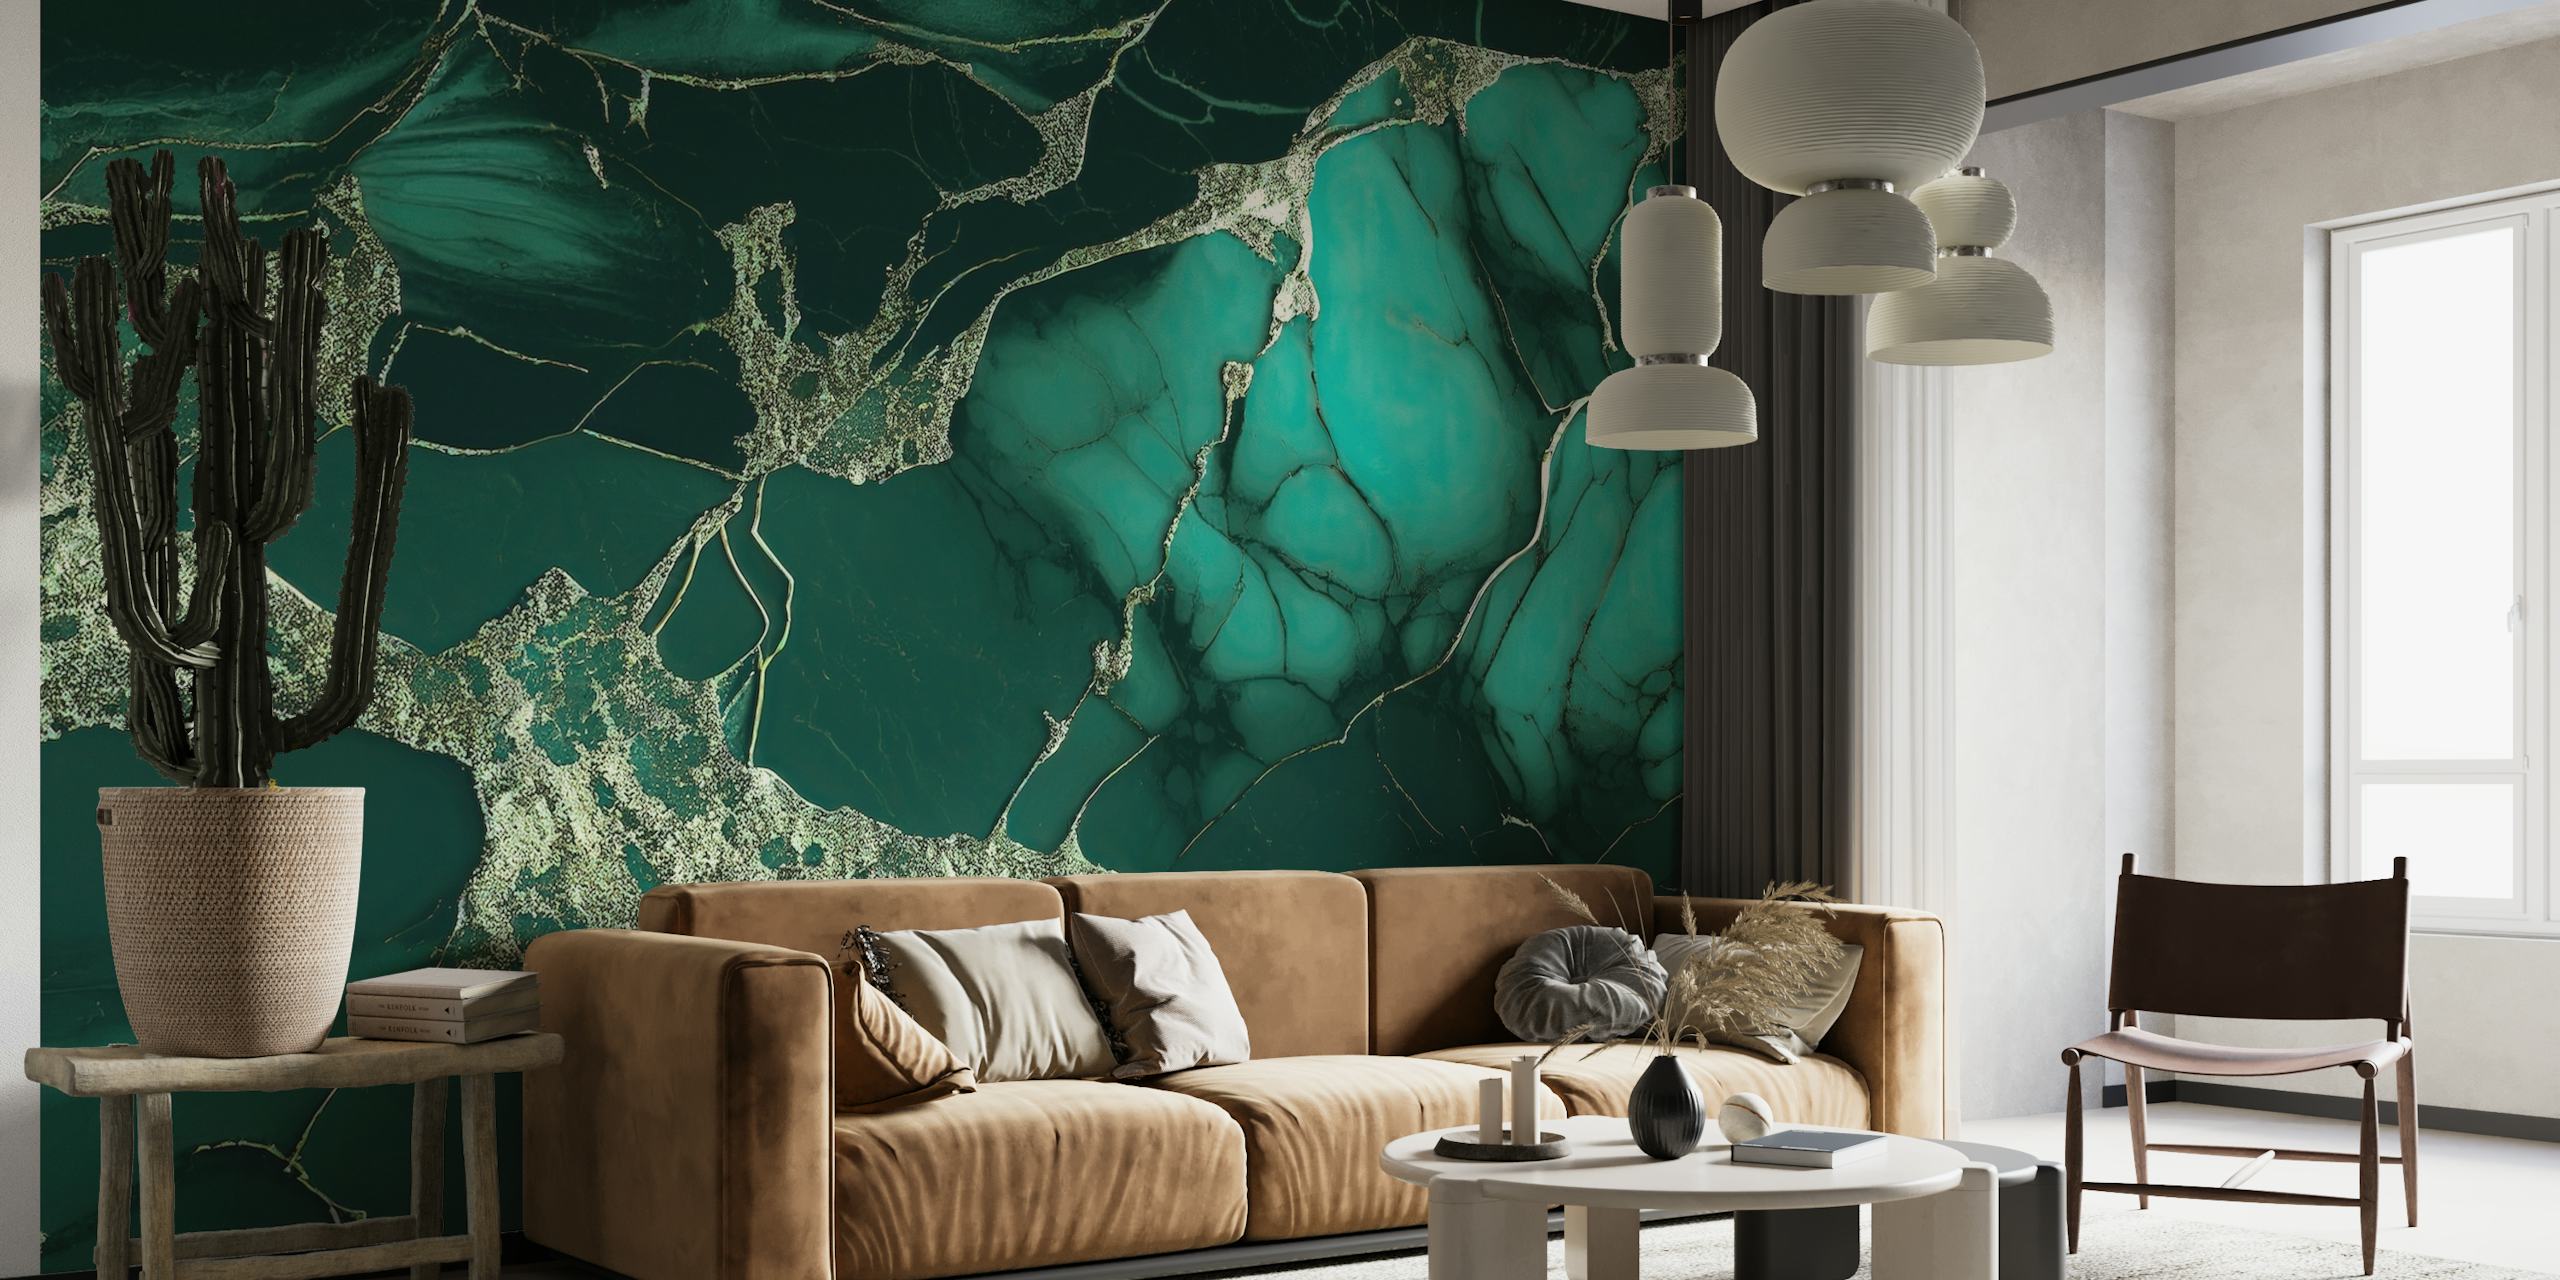 Hieno marmorinen smaragdinvihreä seinämaalaus, jossa on täyteläisiä abstrakteja kuvioita